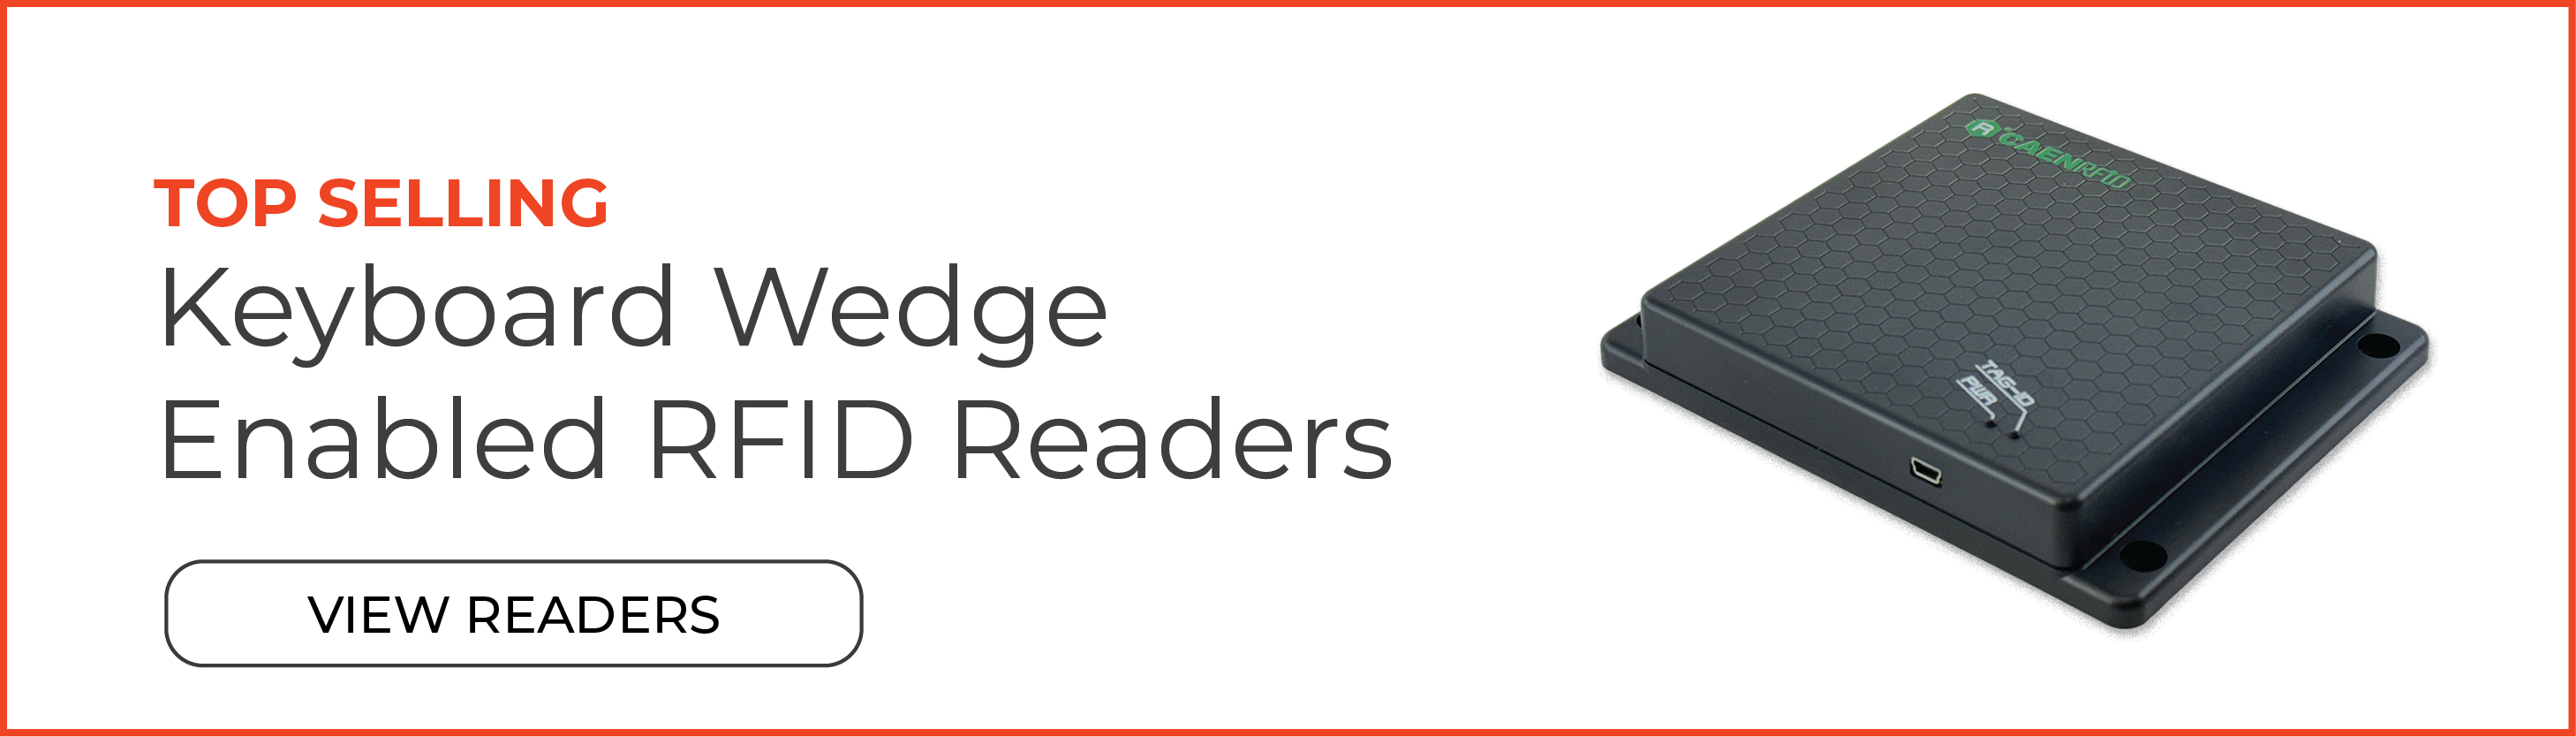 Top Selling Keyboard Wedge Enabled RFID Readers